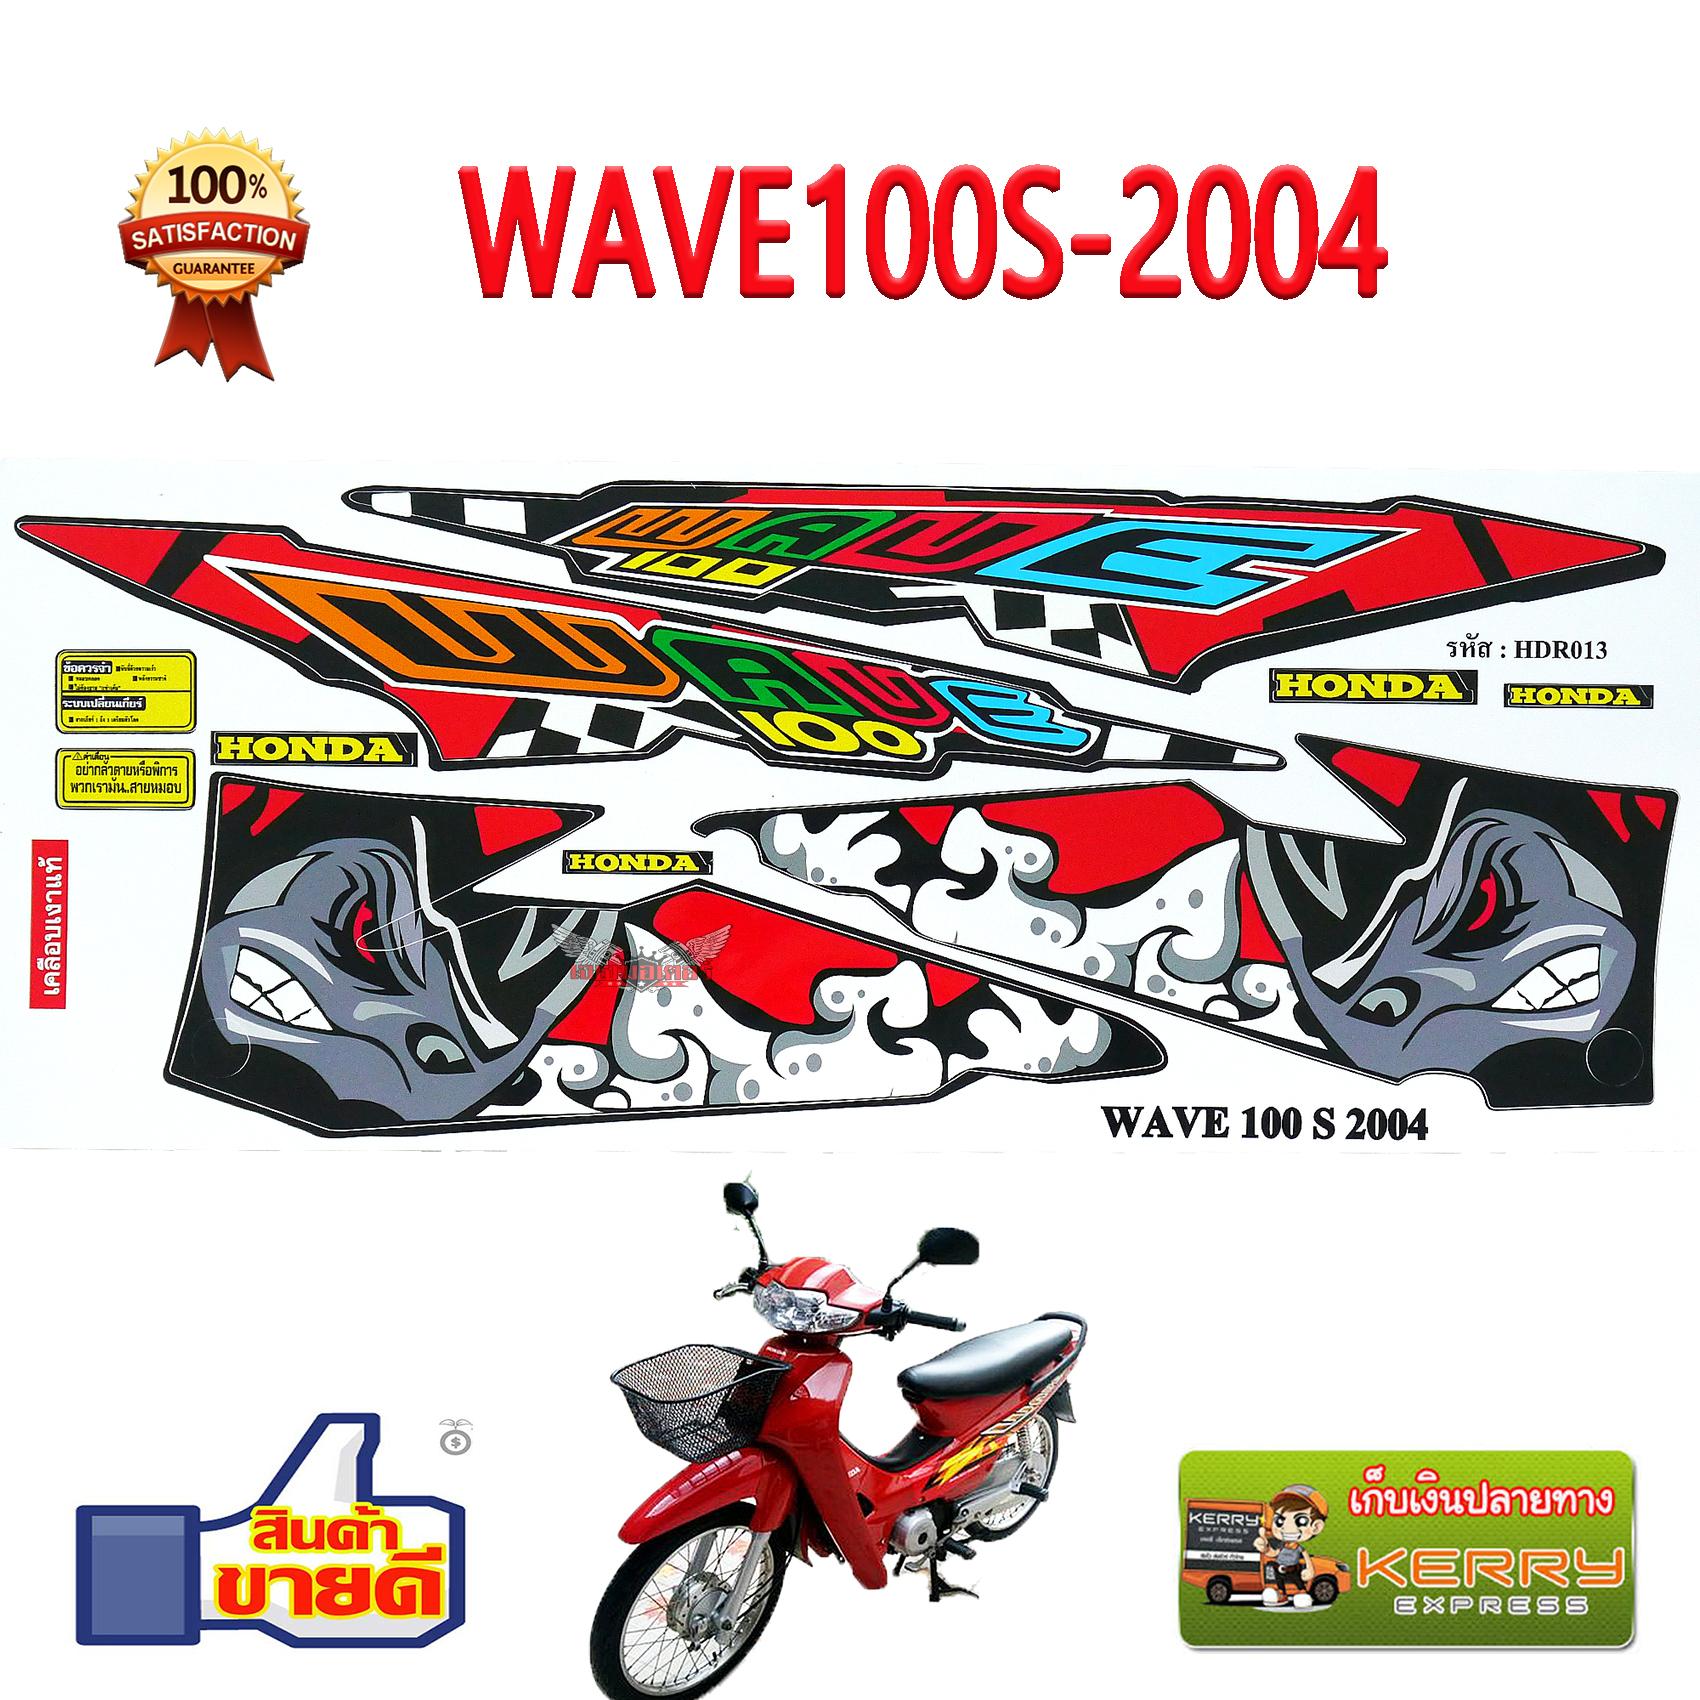 สติ๊กเกอร์ WAVE100-2004 ลาย แรด BLACK RHINO สีแดง สติ๊กเกอร์ติดรถมอเตอร์ไซค์ เวฟ100